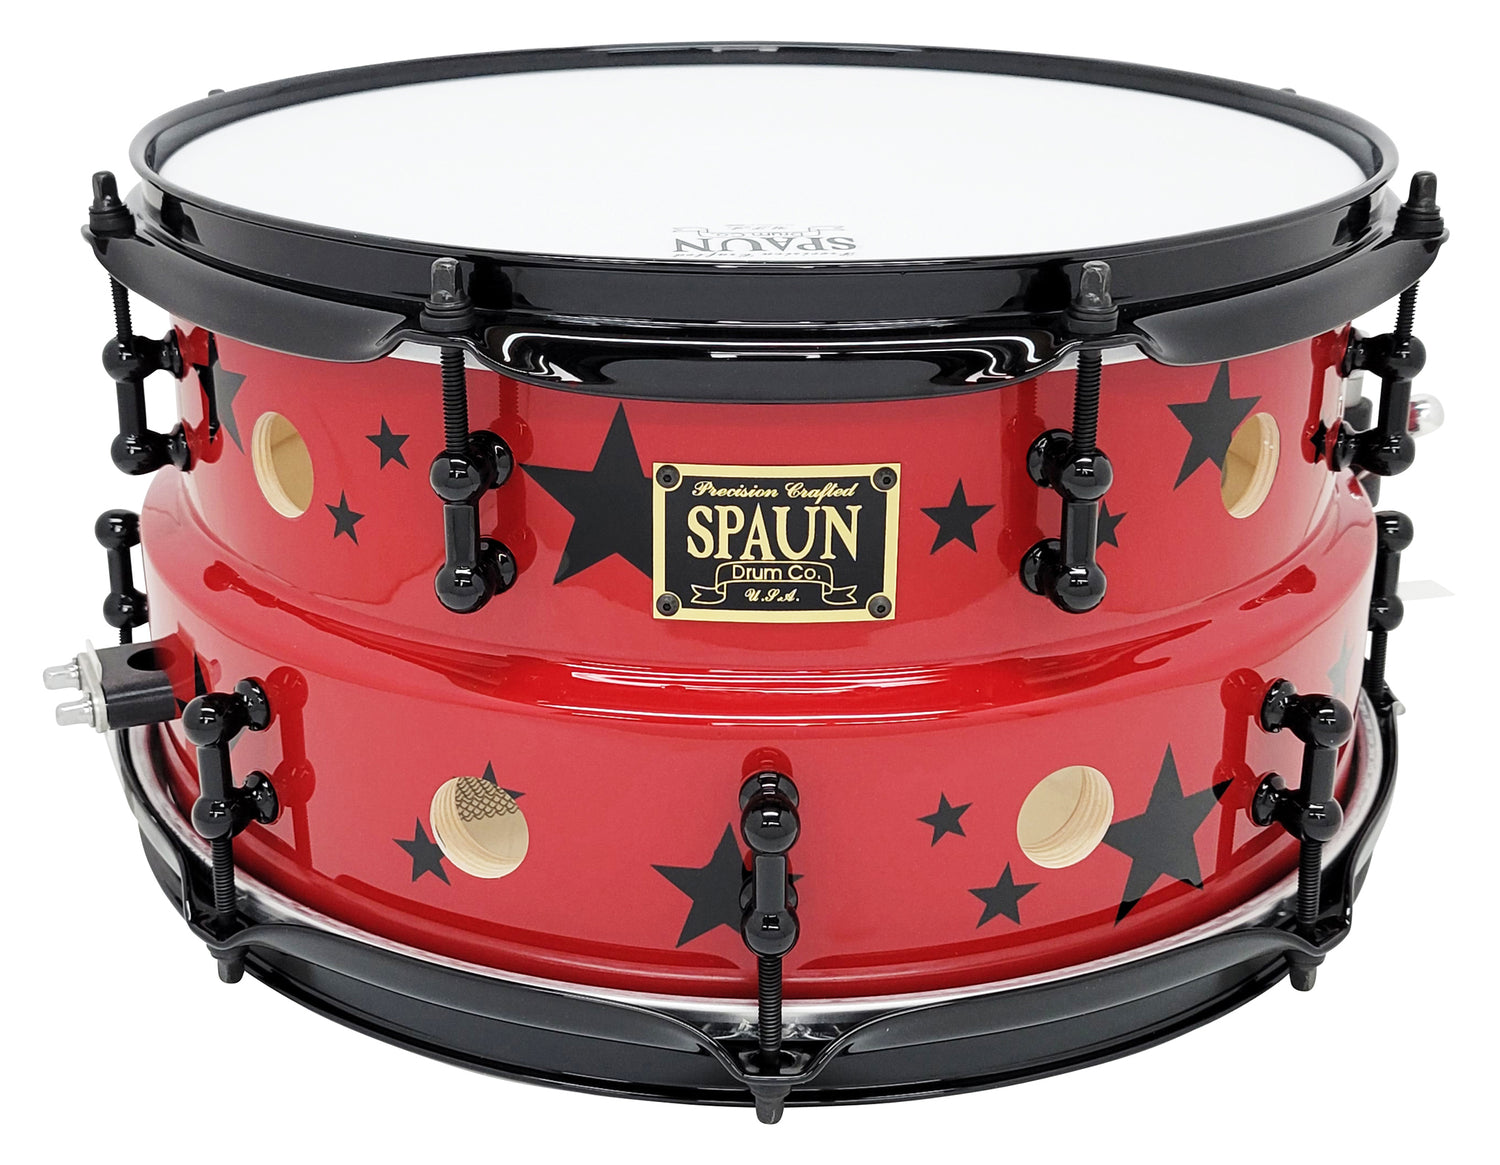 Spaun Drum Company